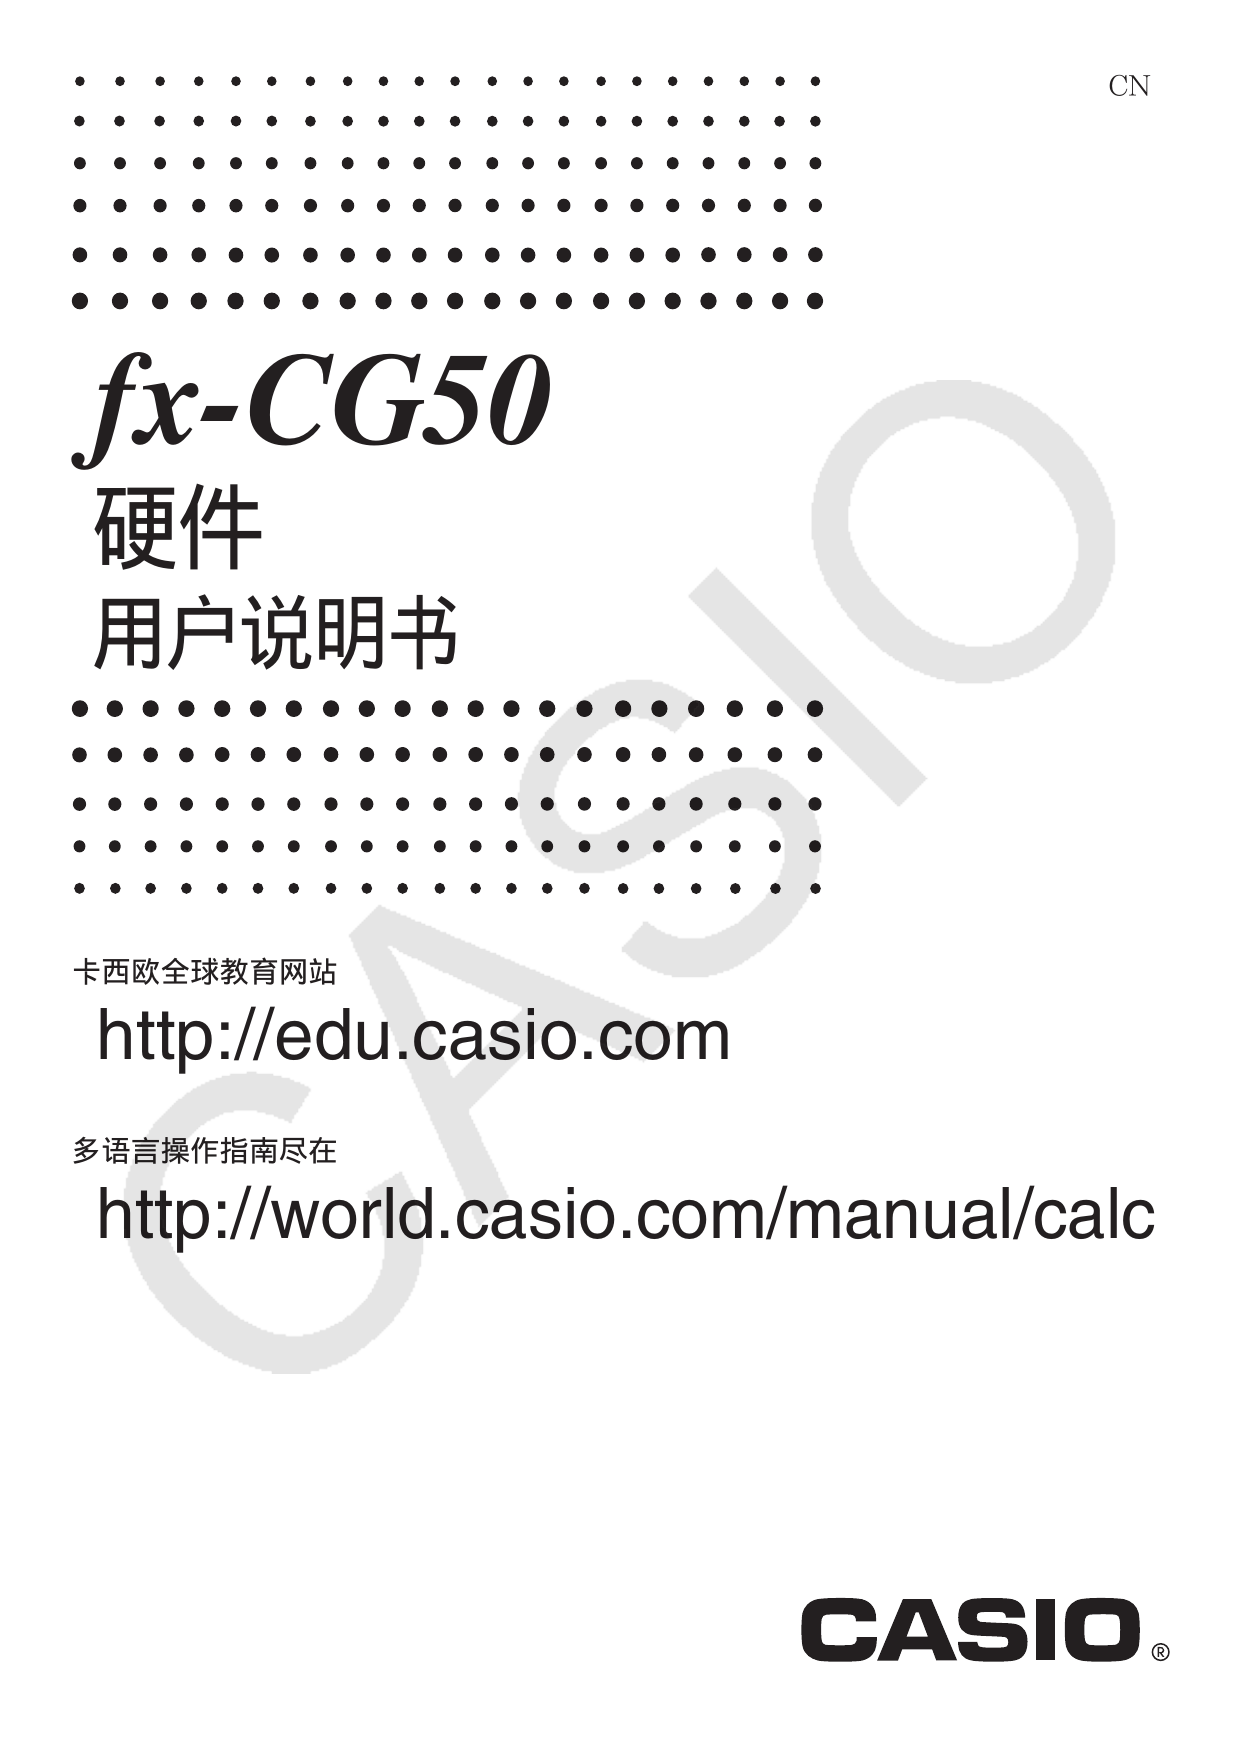 Casio Fx Cg50 User Manual Manualzz